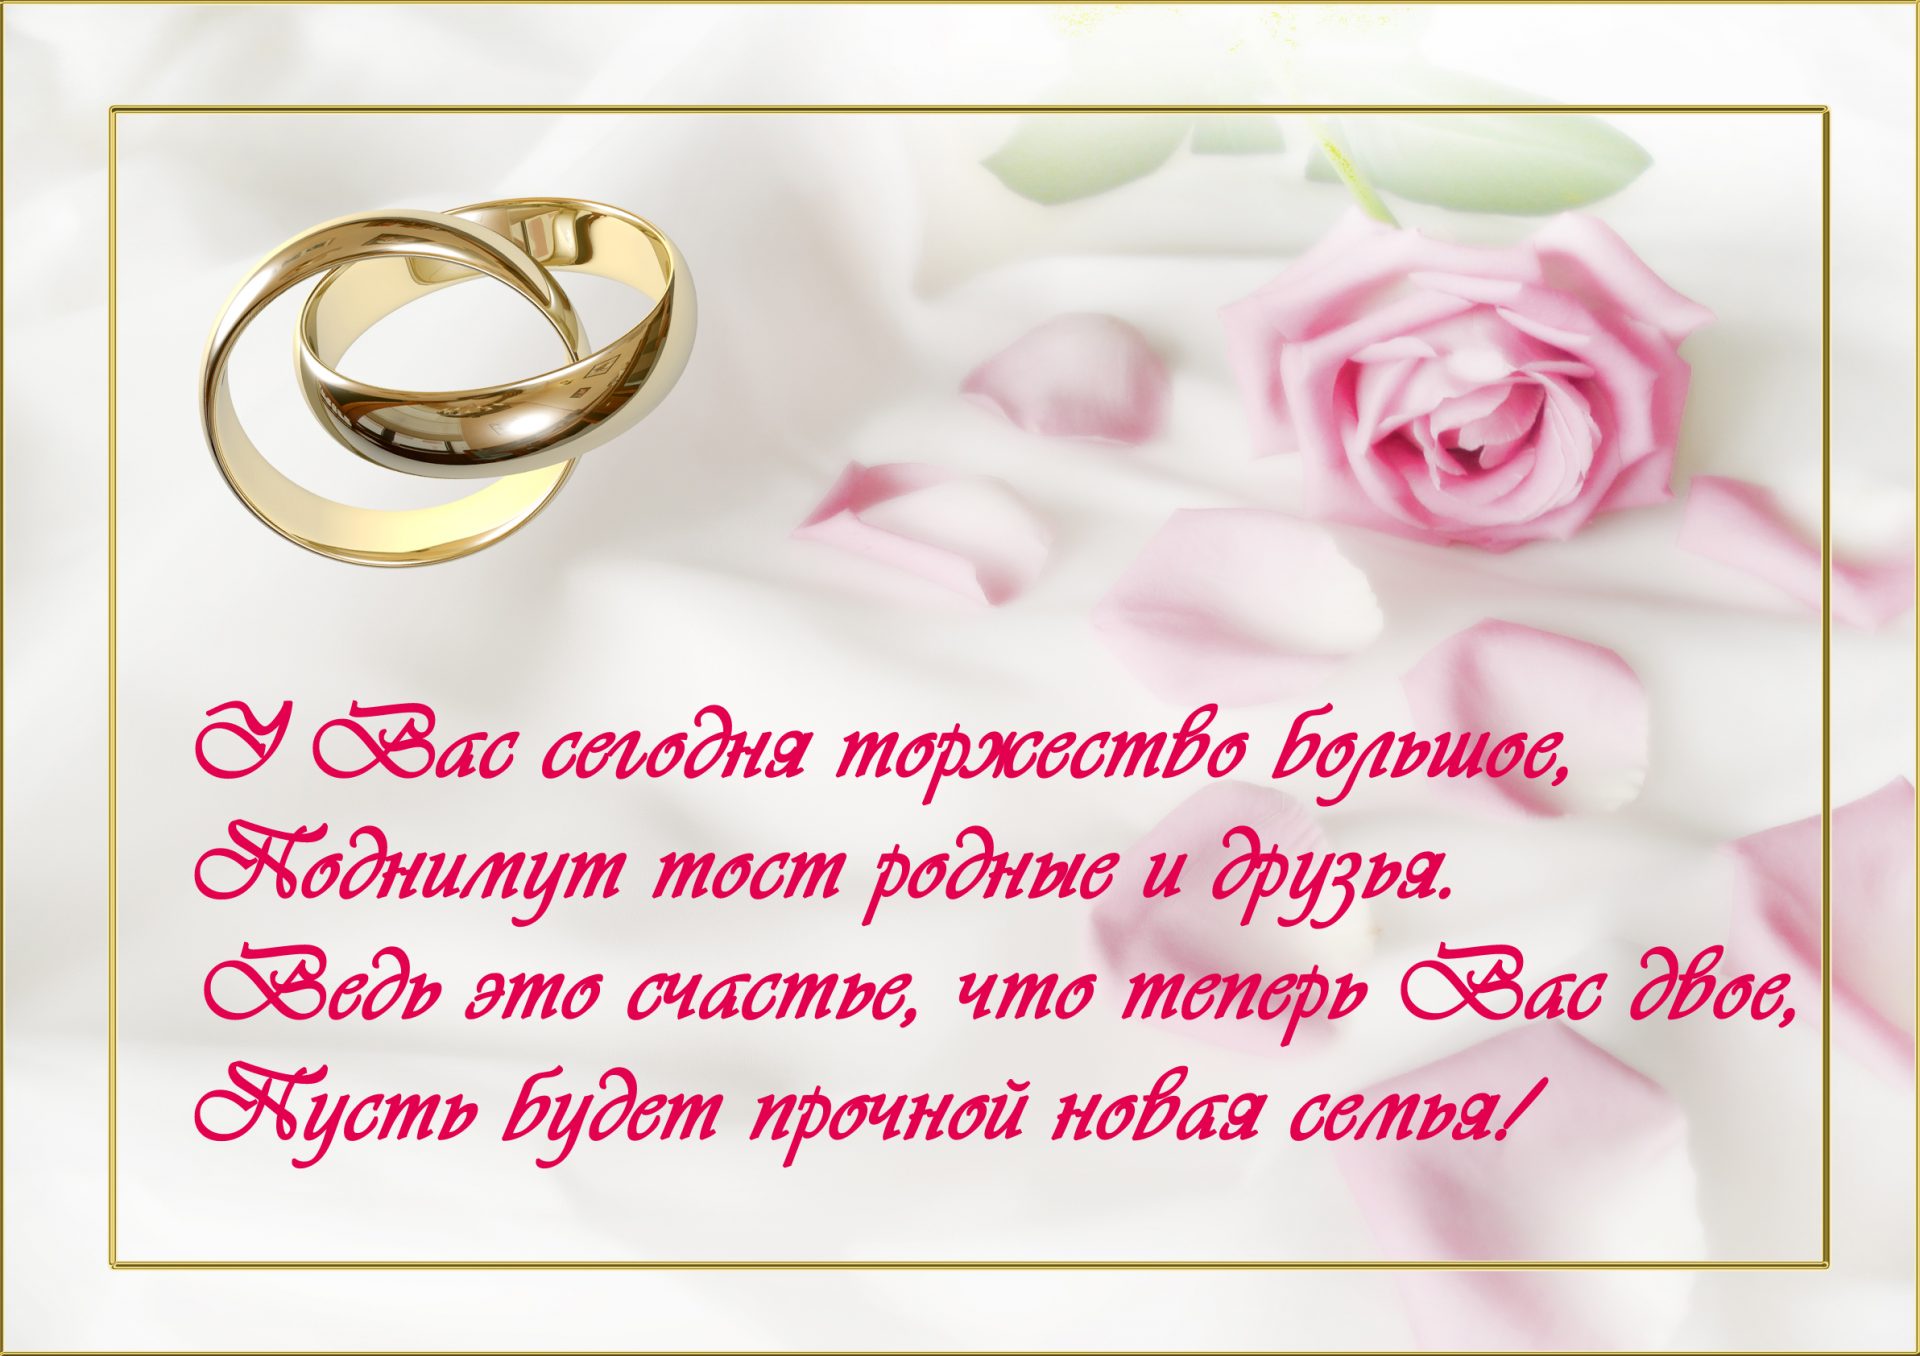 Поздравления со свадьбой красивые короткие | pzdb.ru - поздравления на все случаи жизни